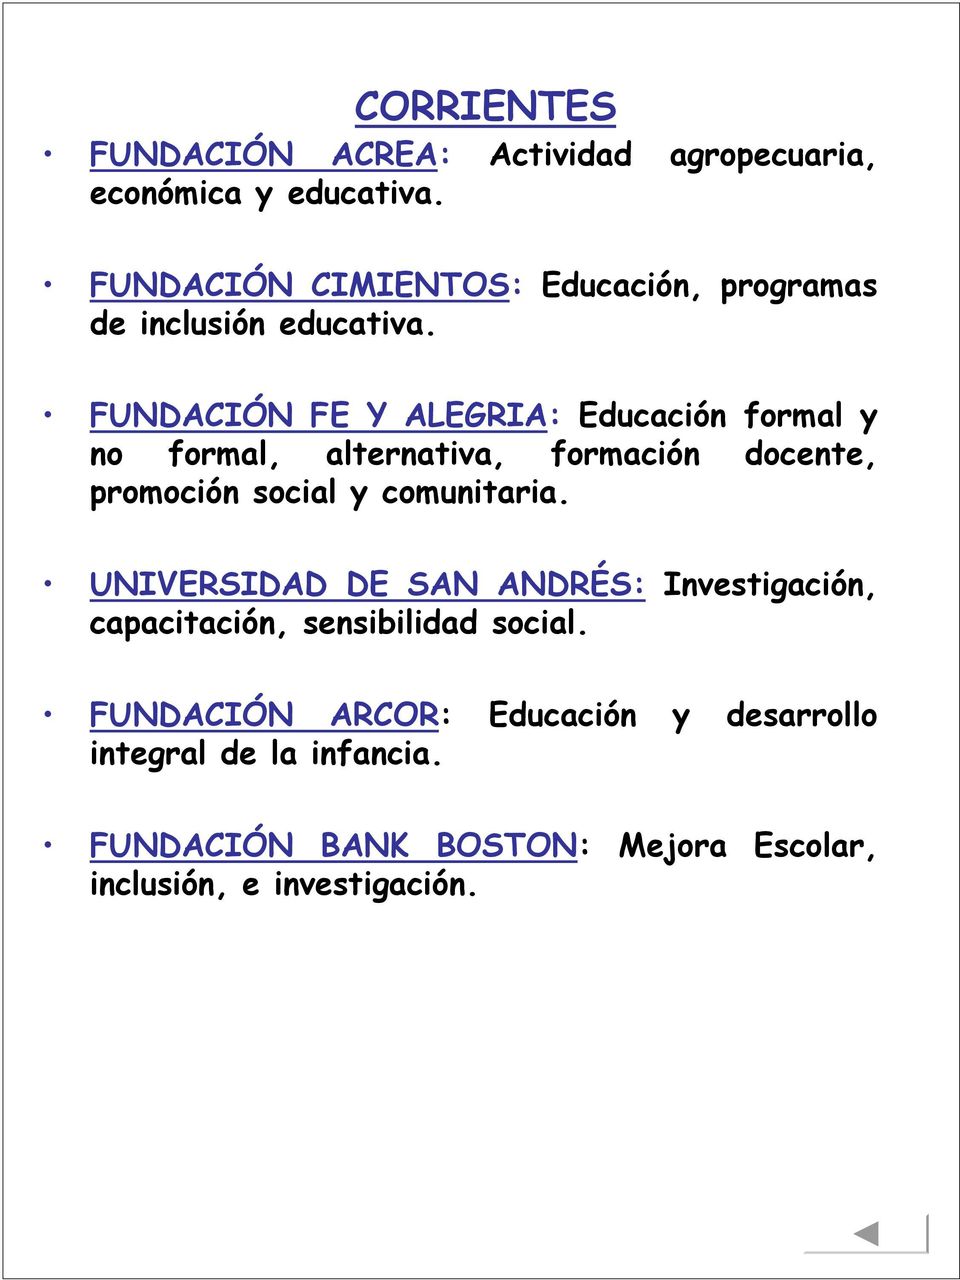 FUNDACIÓN FE Y ALEGRIA: Educación formal y no formal, alternativa, formación docente, promoción social y comunitaria.